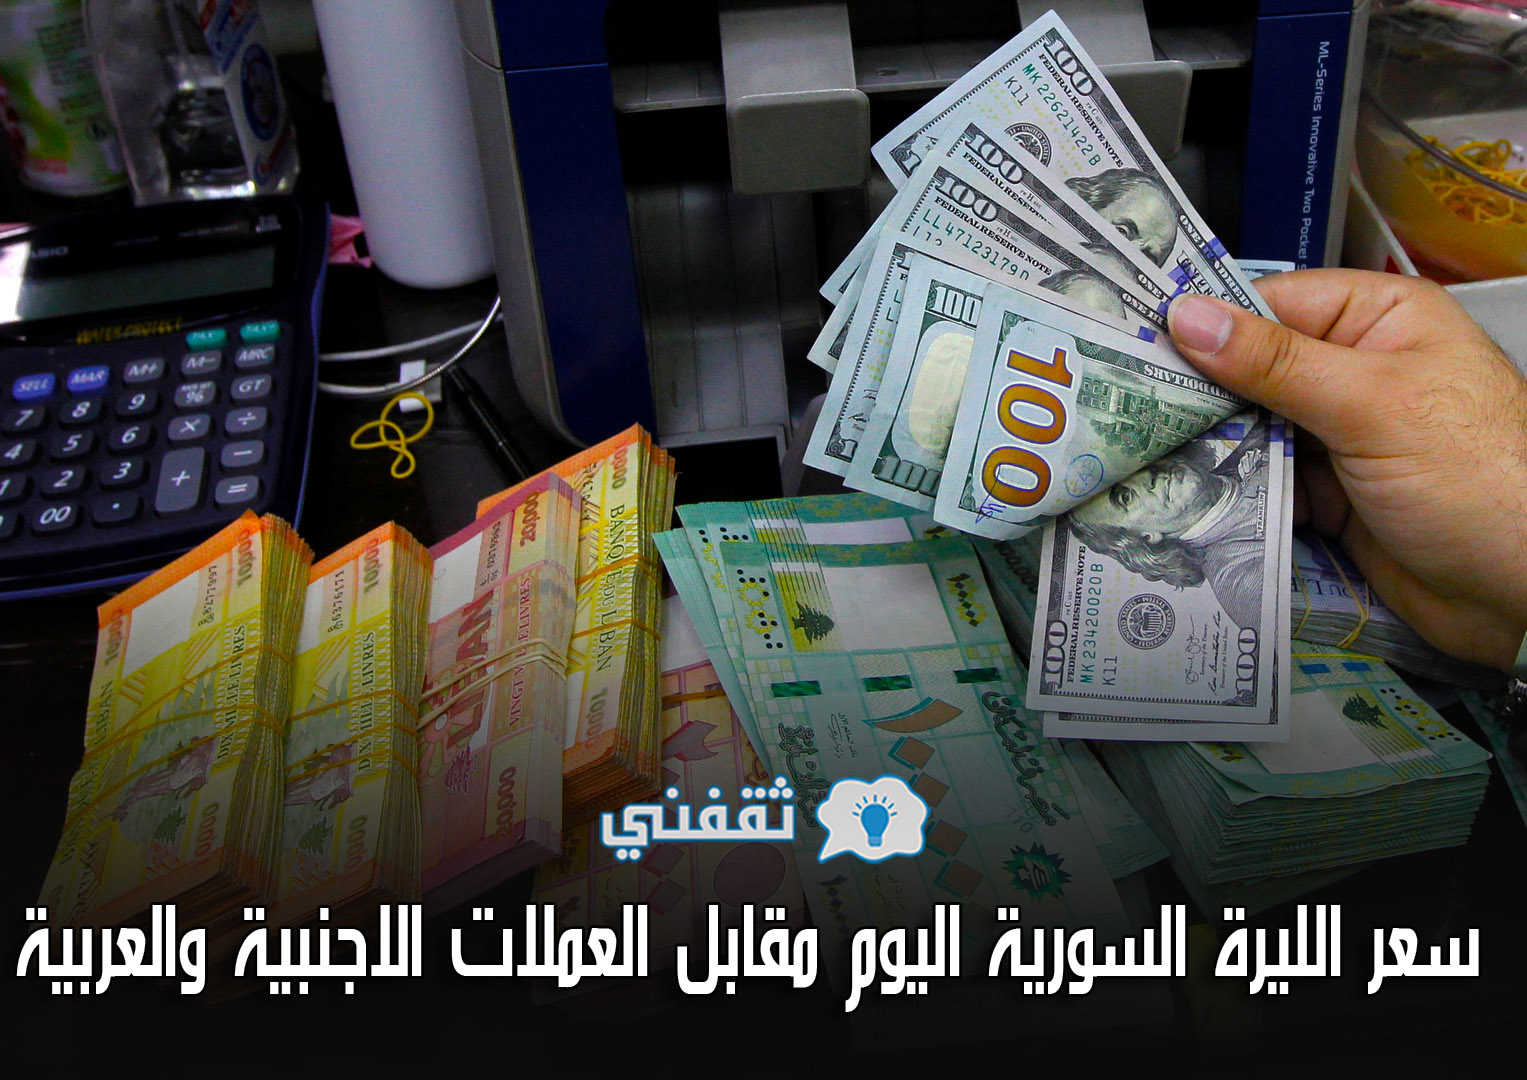 سعر الليرة السورية اليوم الأحد 2-5-2021 | هنا أسعار صرف الدولار والعملات الاجنبية والعربية مقابل الليرة